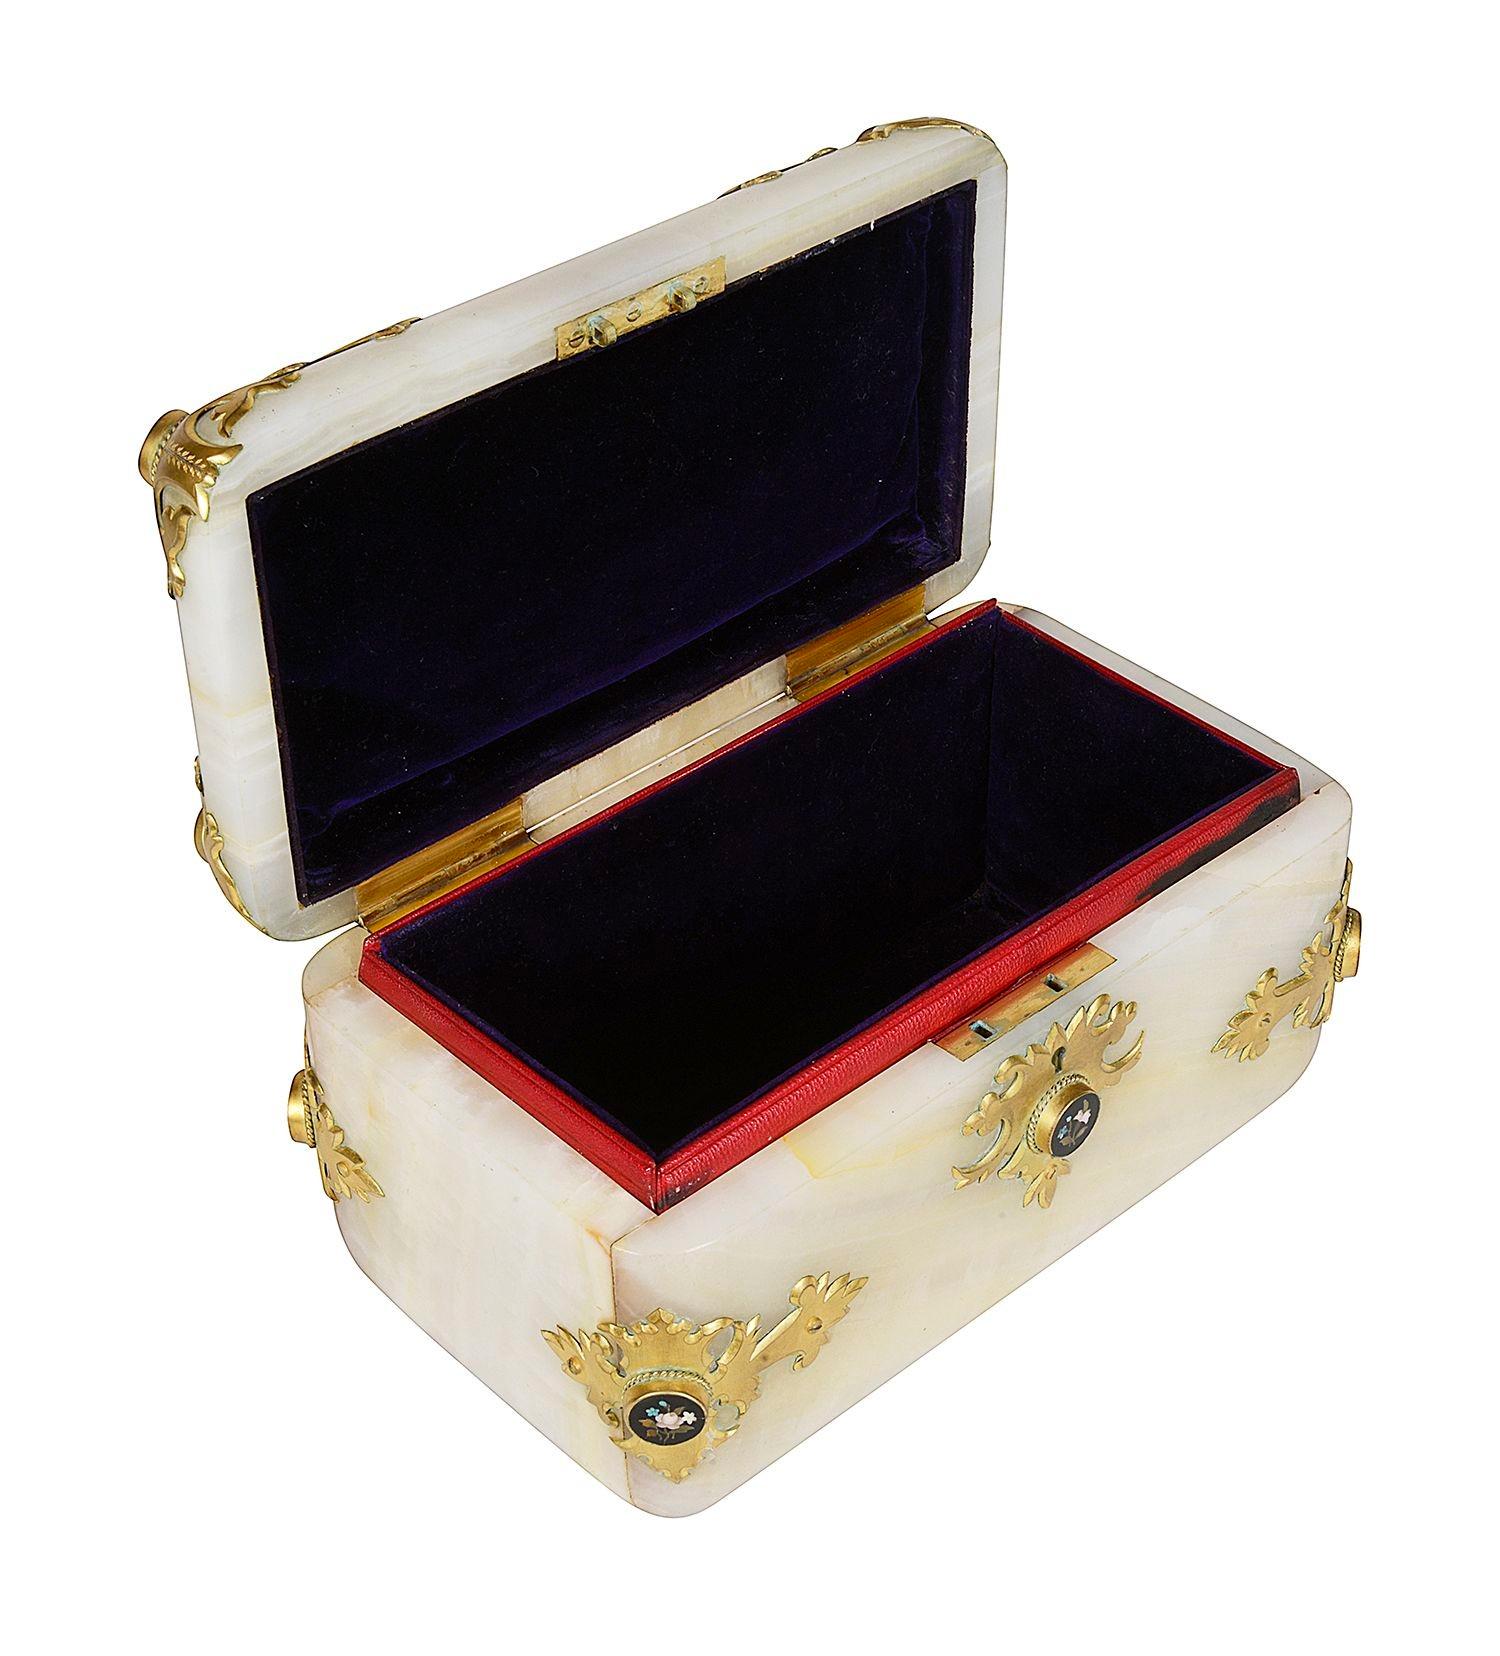 Onyx 19th Century French onyx + ormolu jewellery casket. For Sale